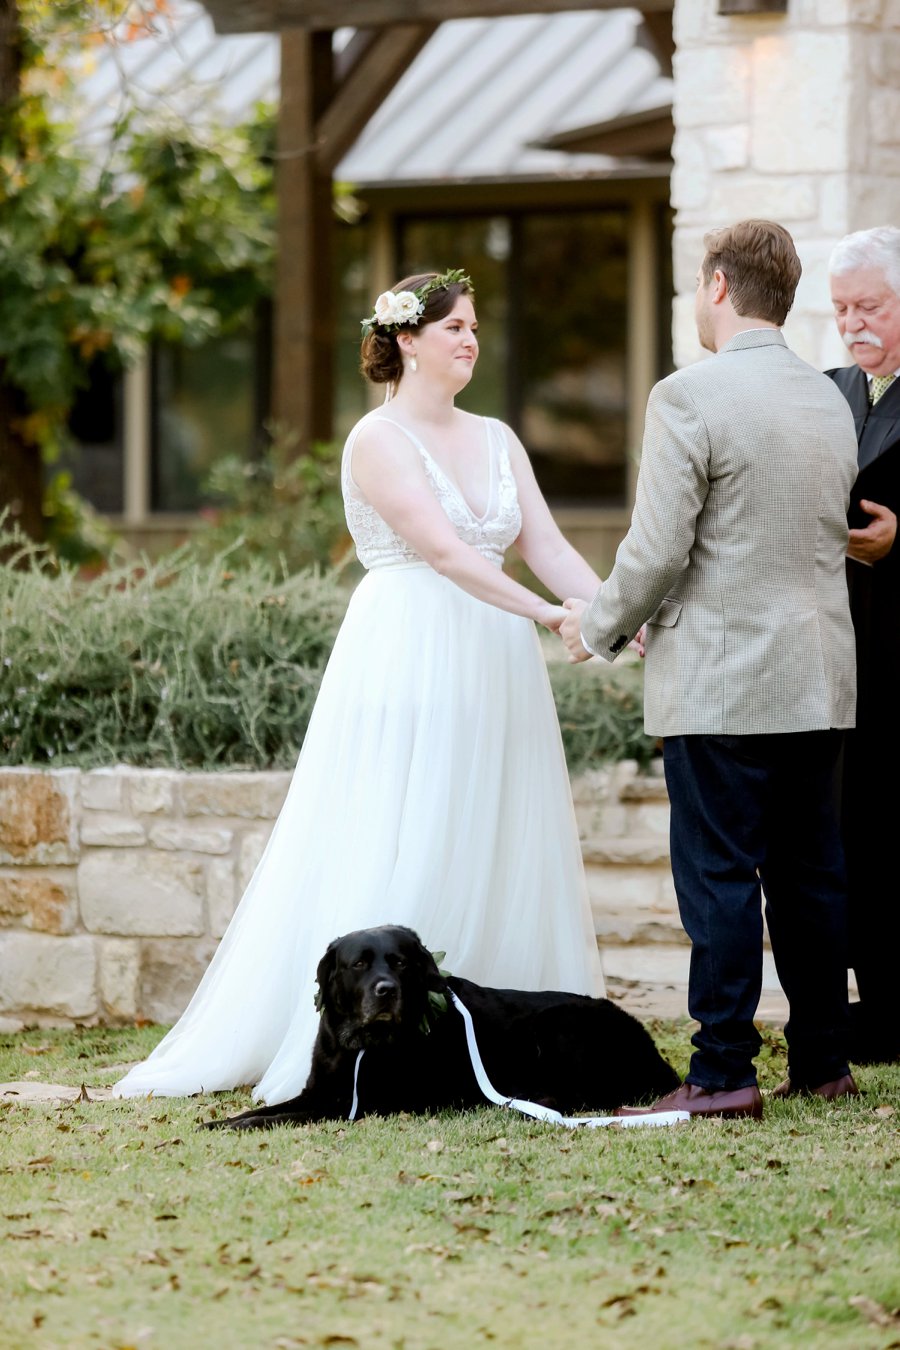 A Romantic Blue & Peach Texas Wedding Day via TheELD.com